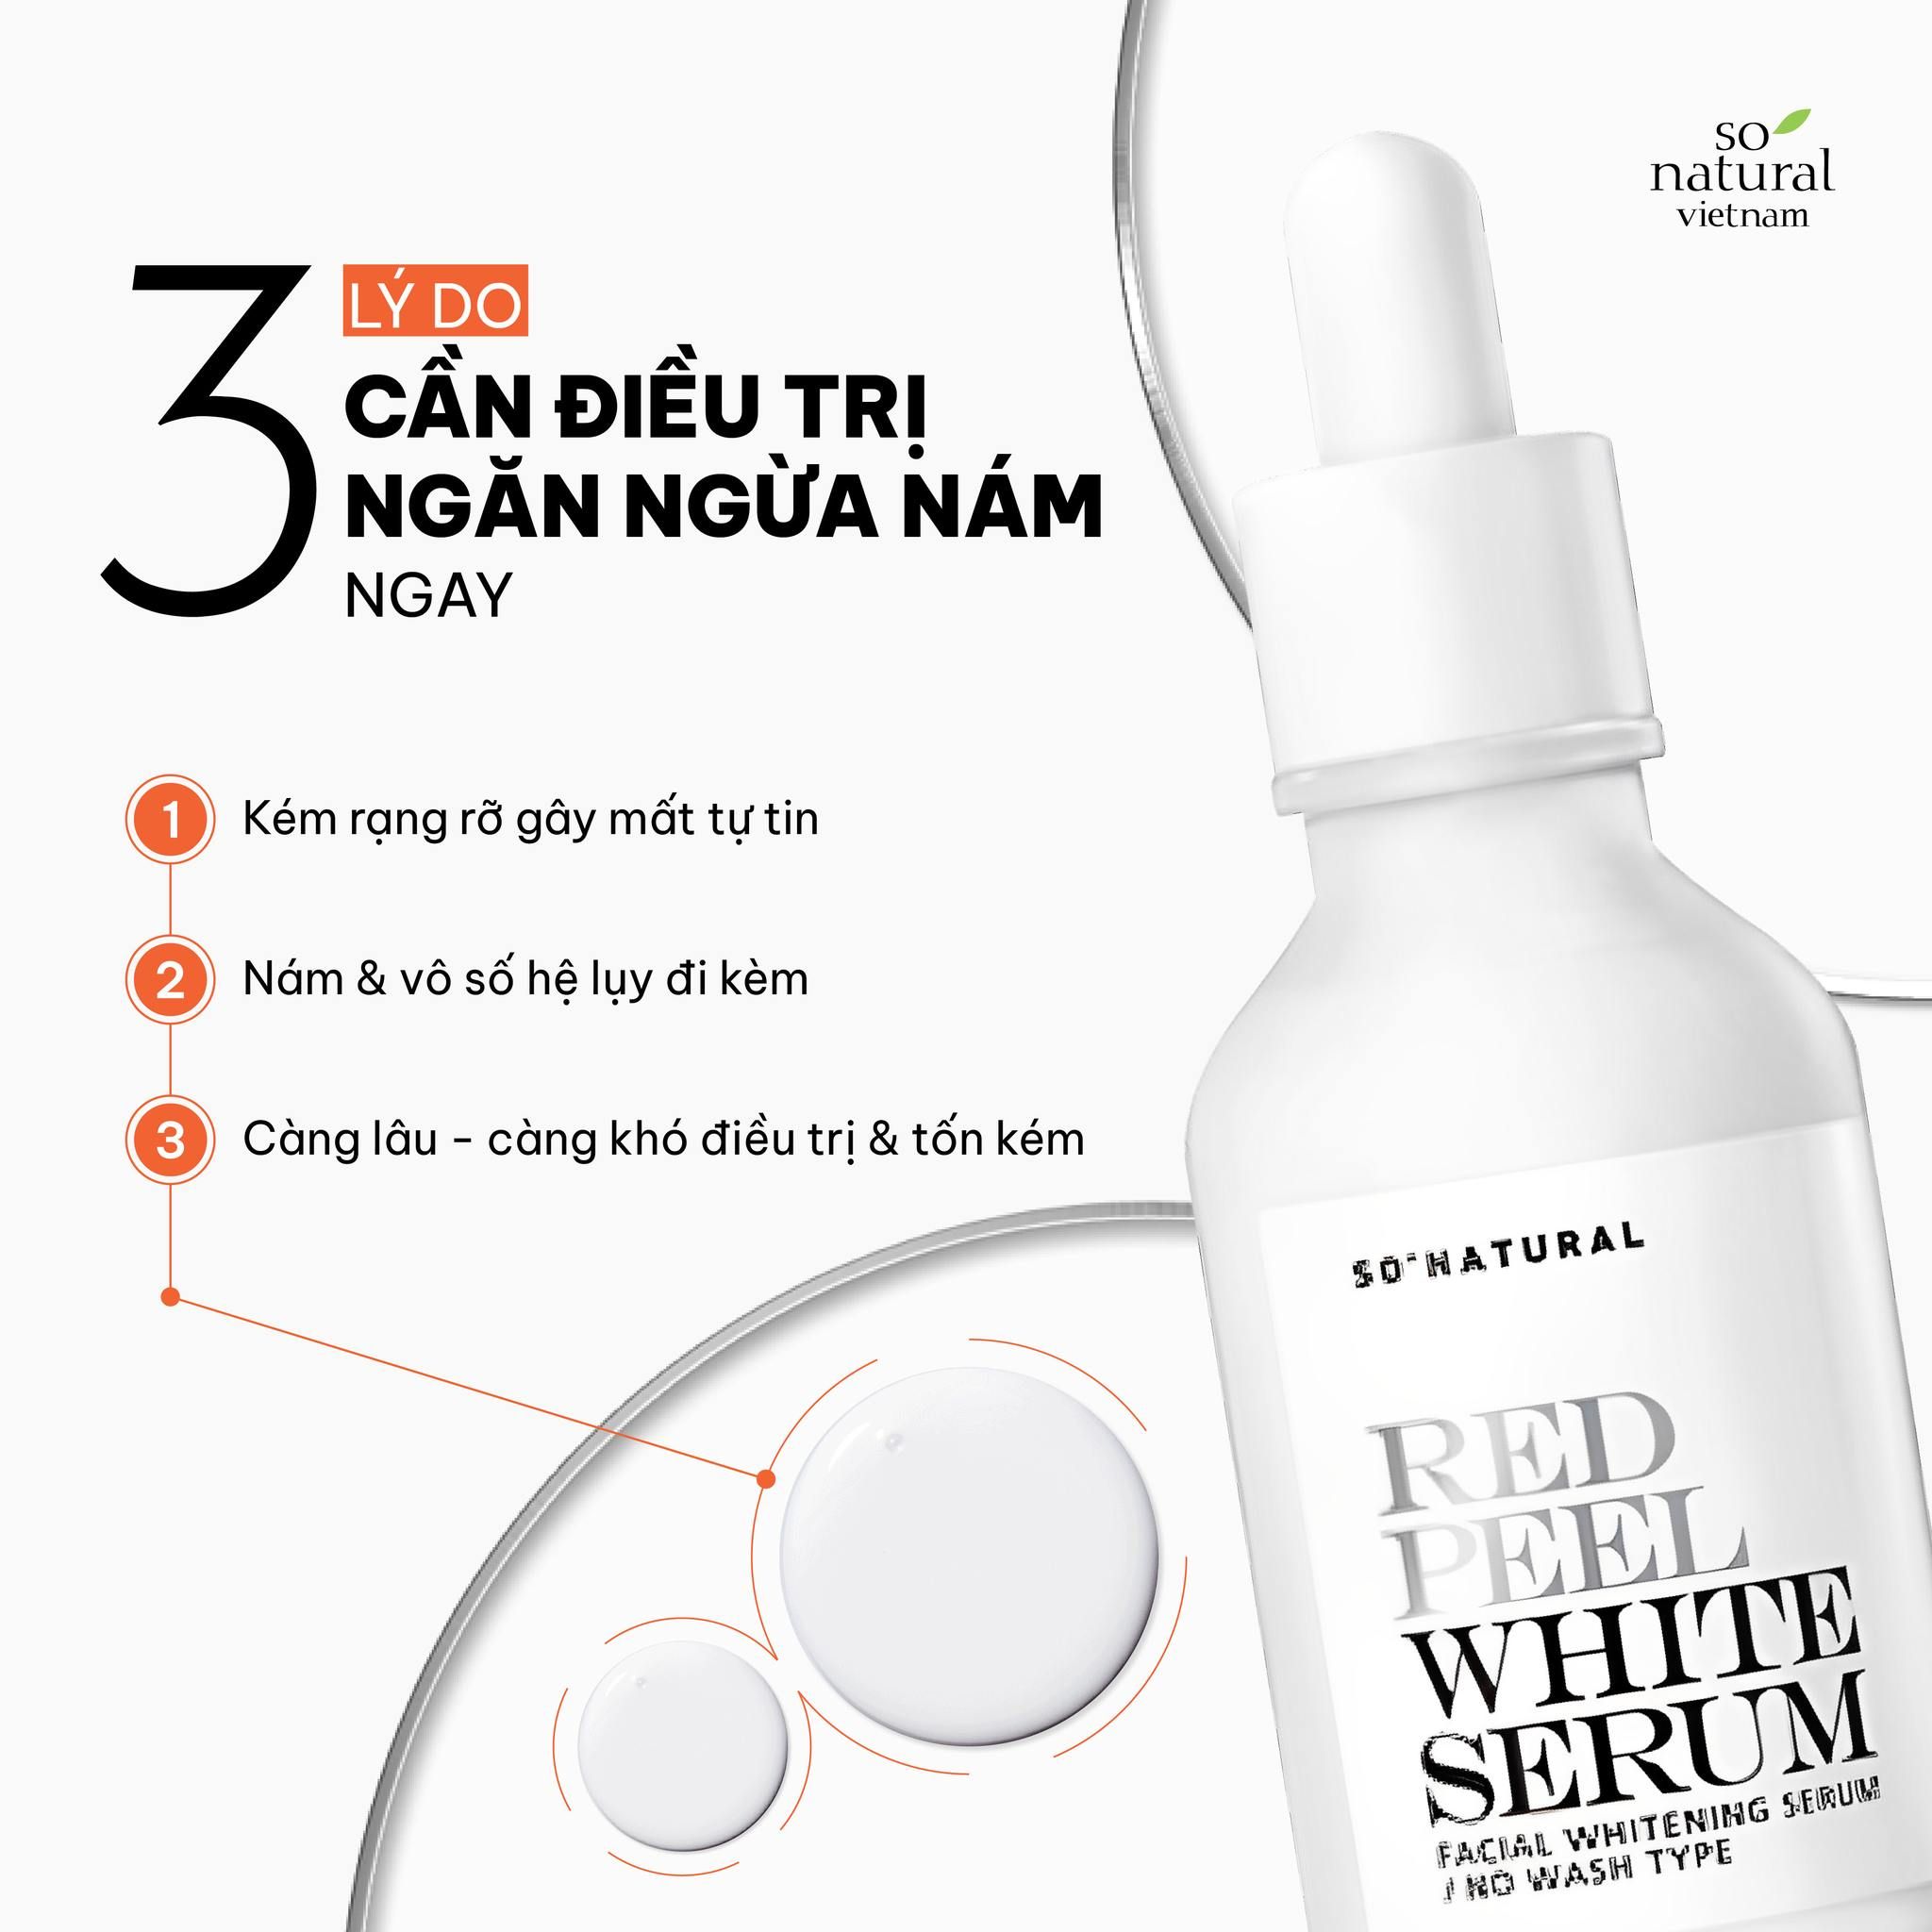  [NEW] Tinh Chất Dưỡng Trắng, Mờ Thâm Nám So’Natural Red Peel White Serum 35ml 